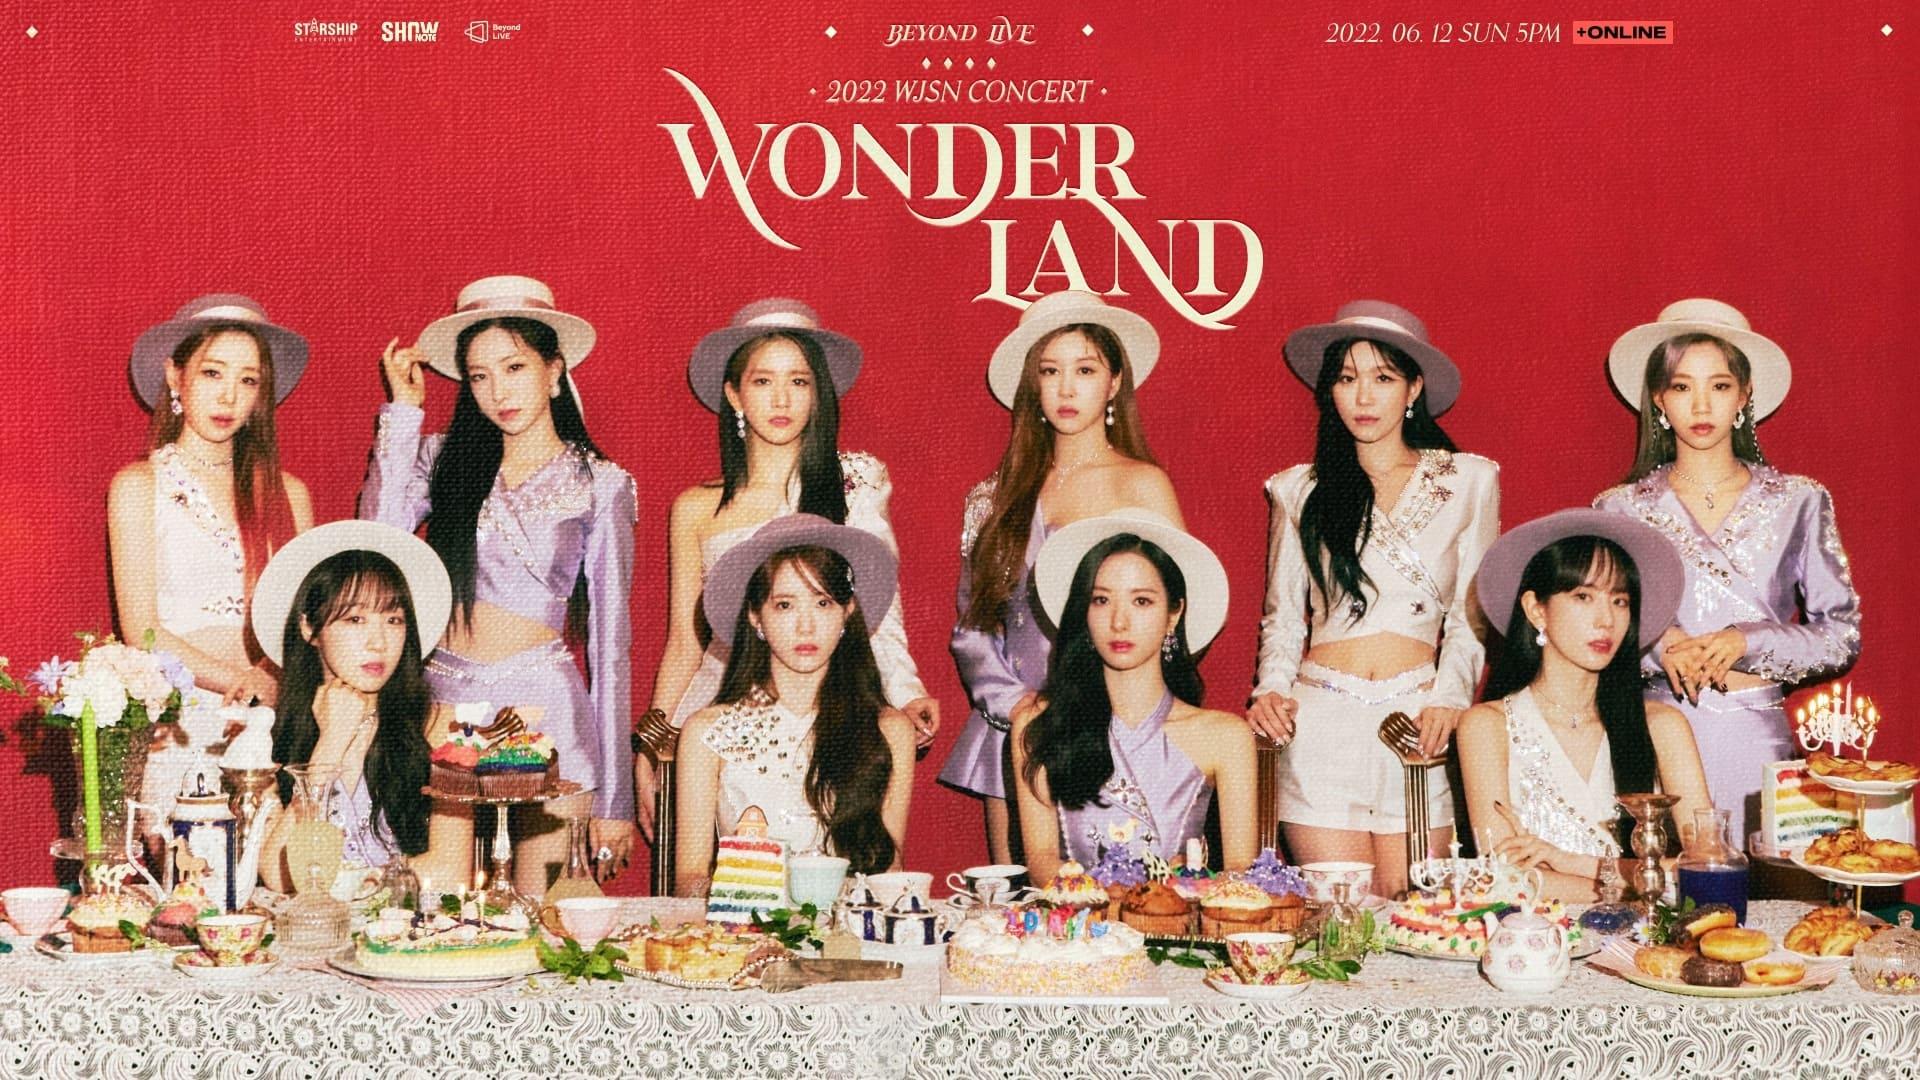 WJSN Concert 2022 "Wonderland" backdrop